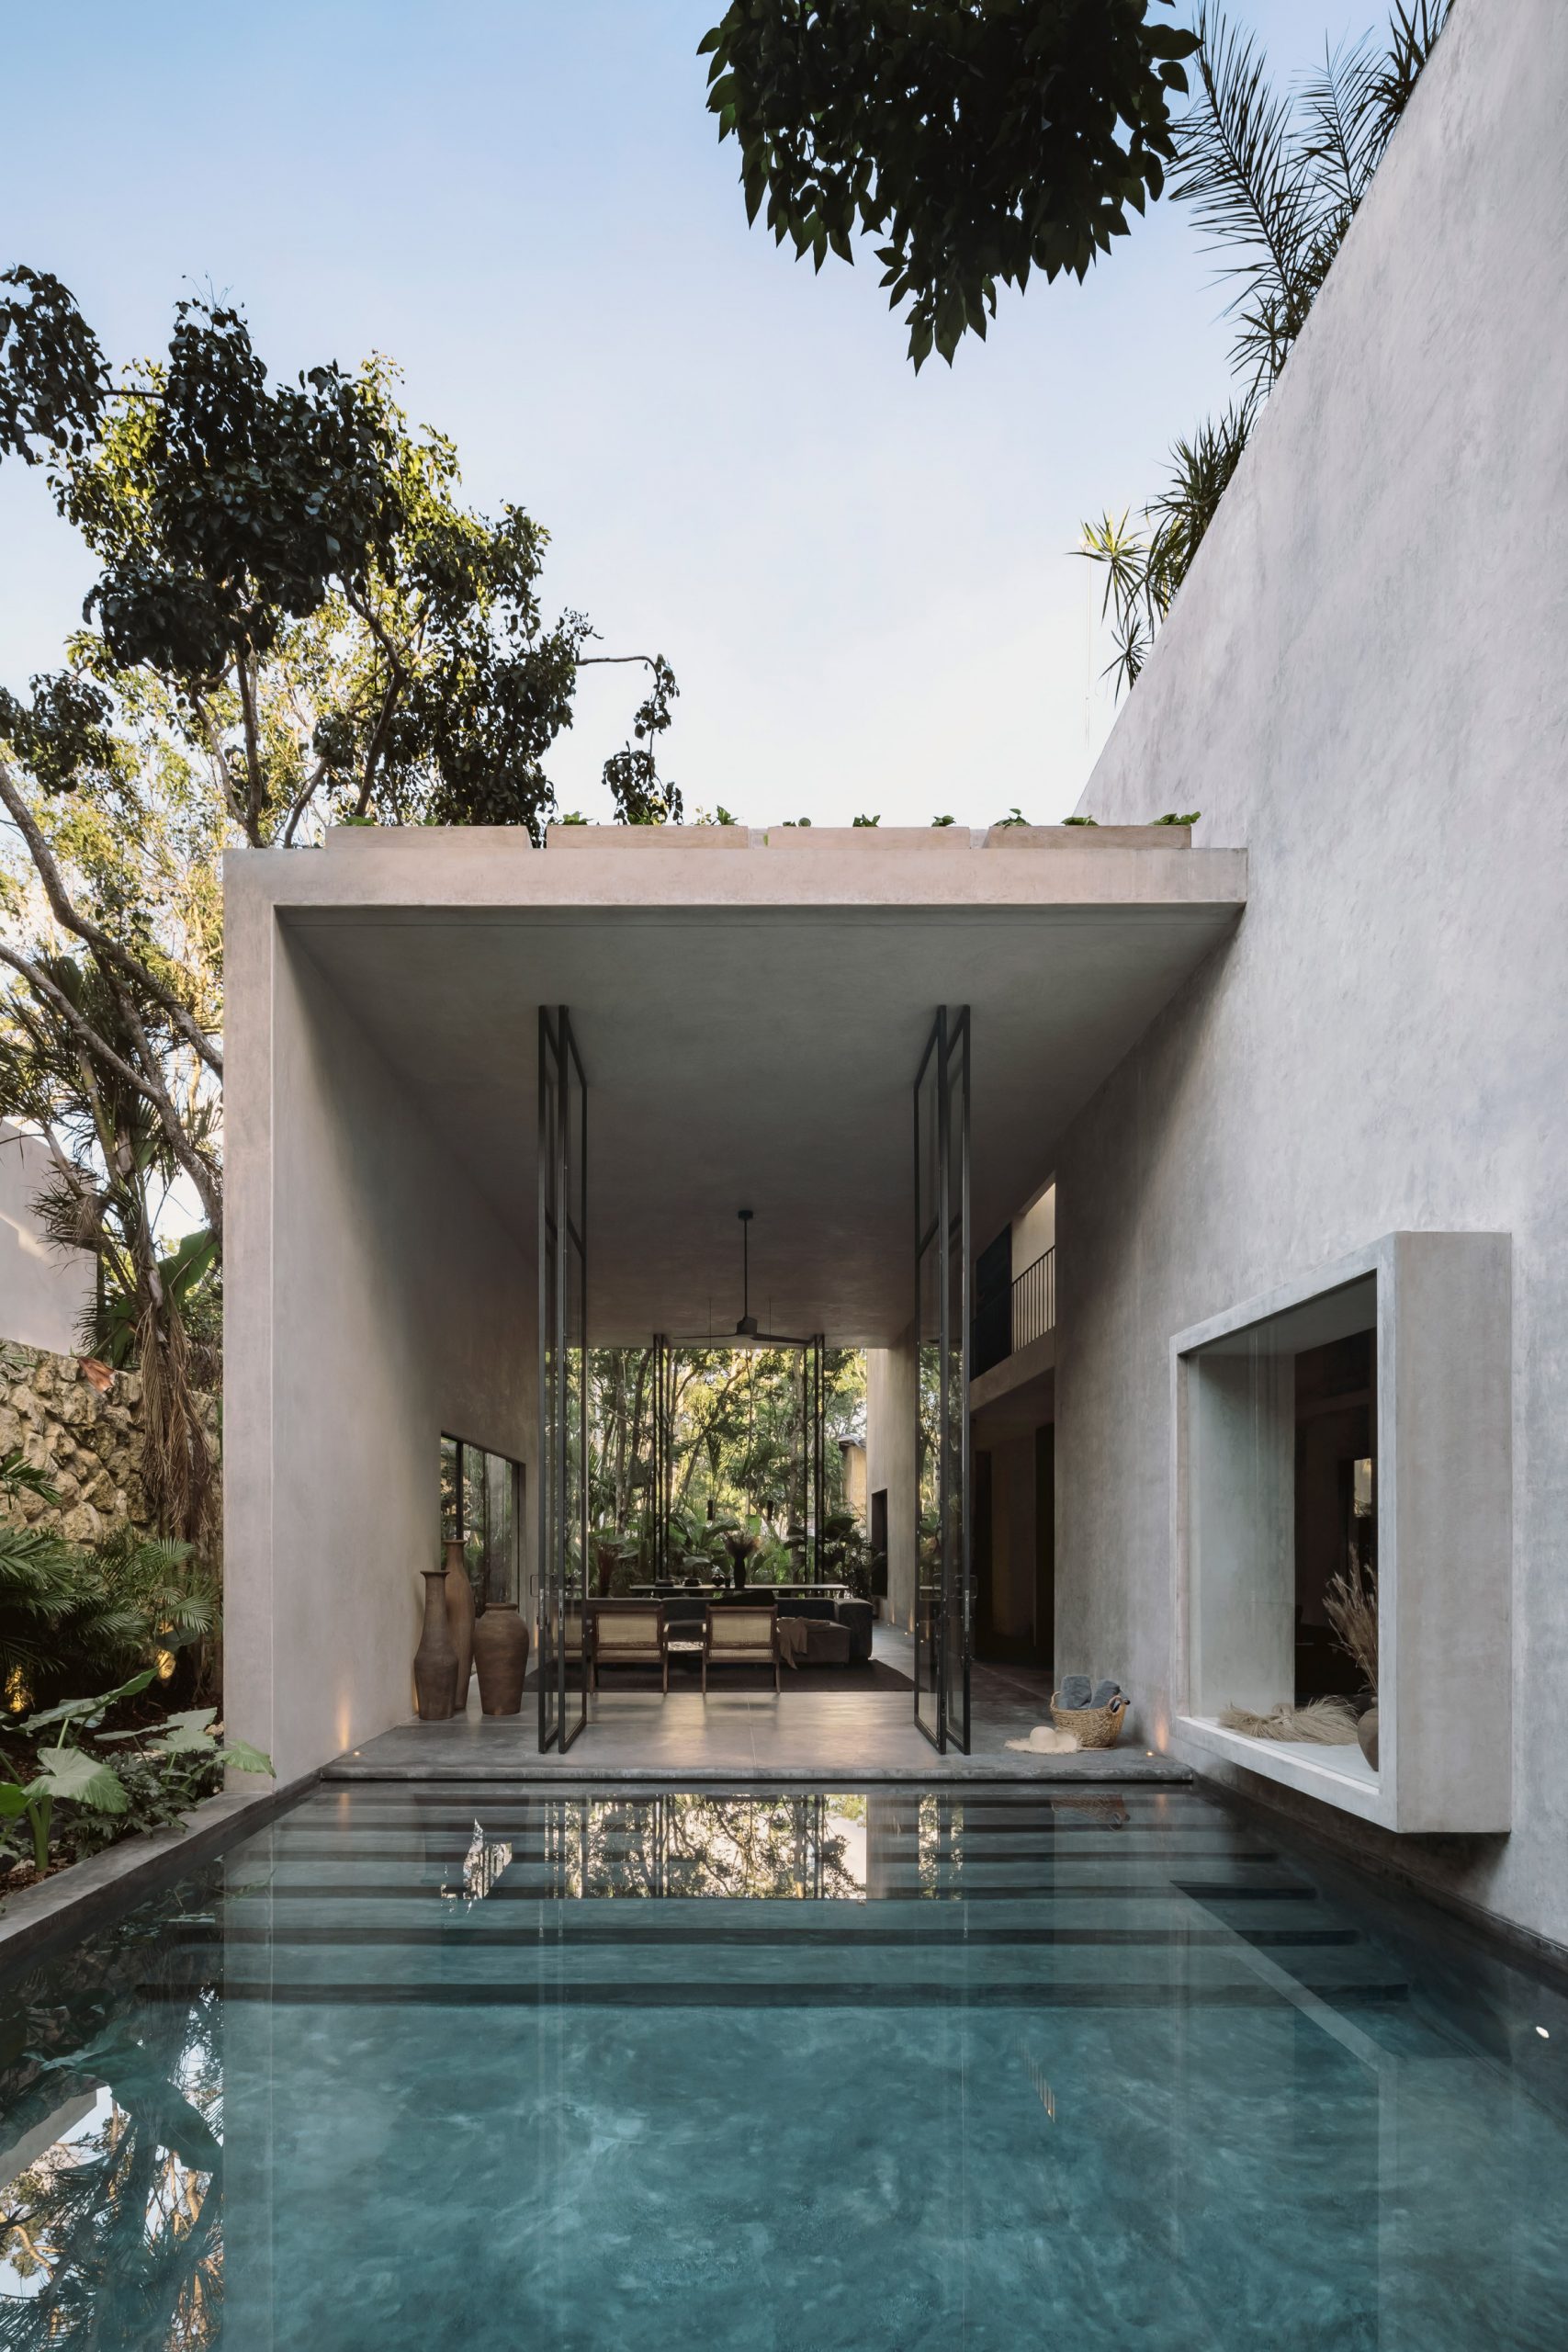 Casa Aviv's swimming pool in Mexico